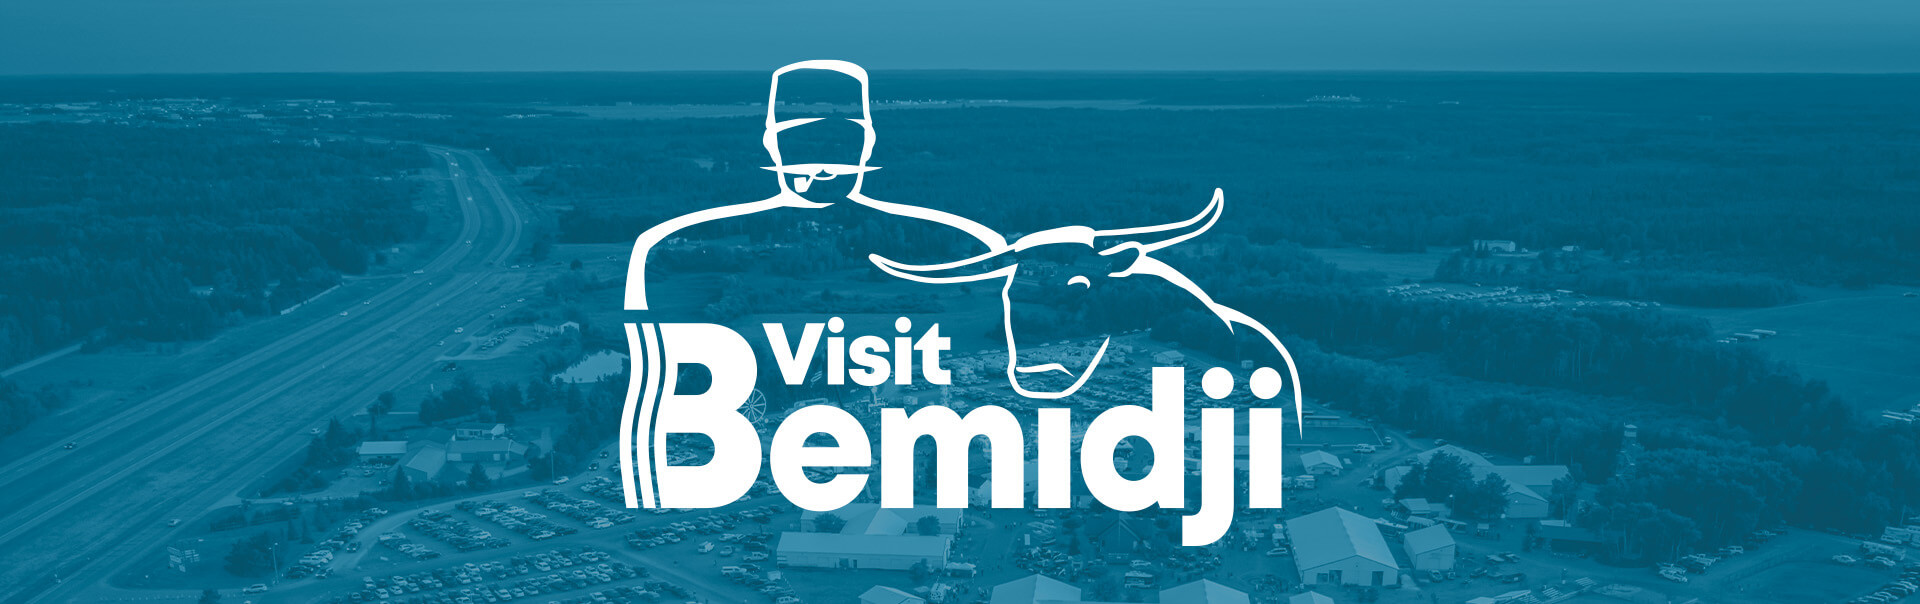 Visit Bemidji Tourism